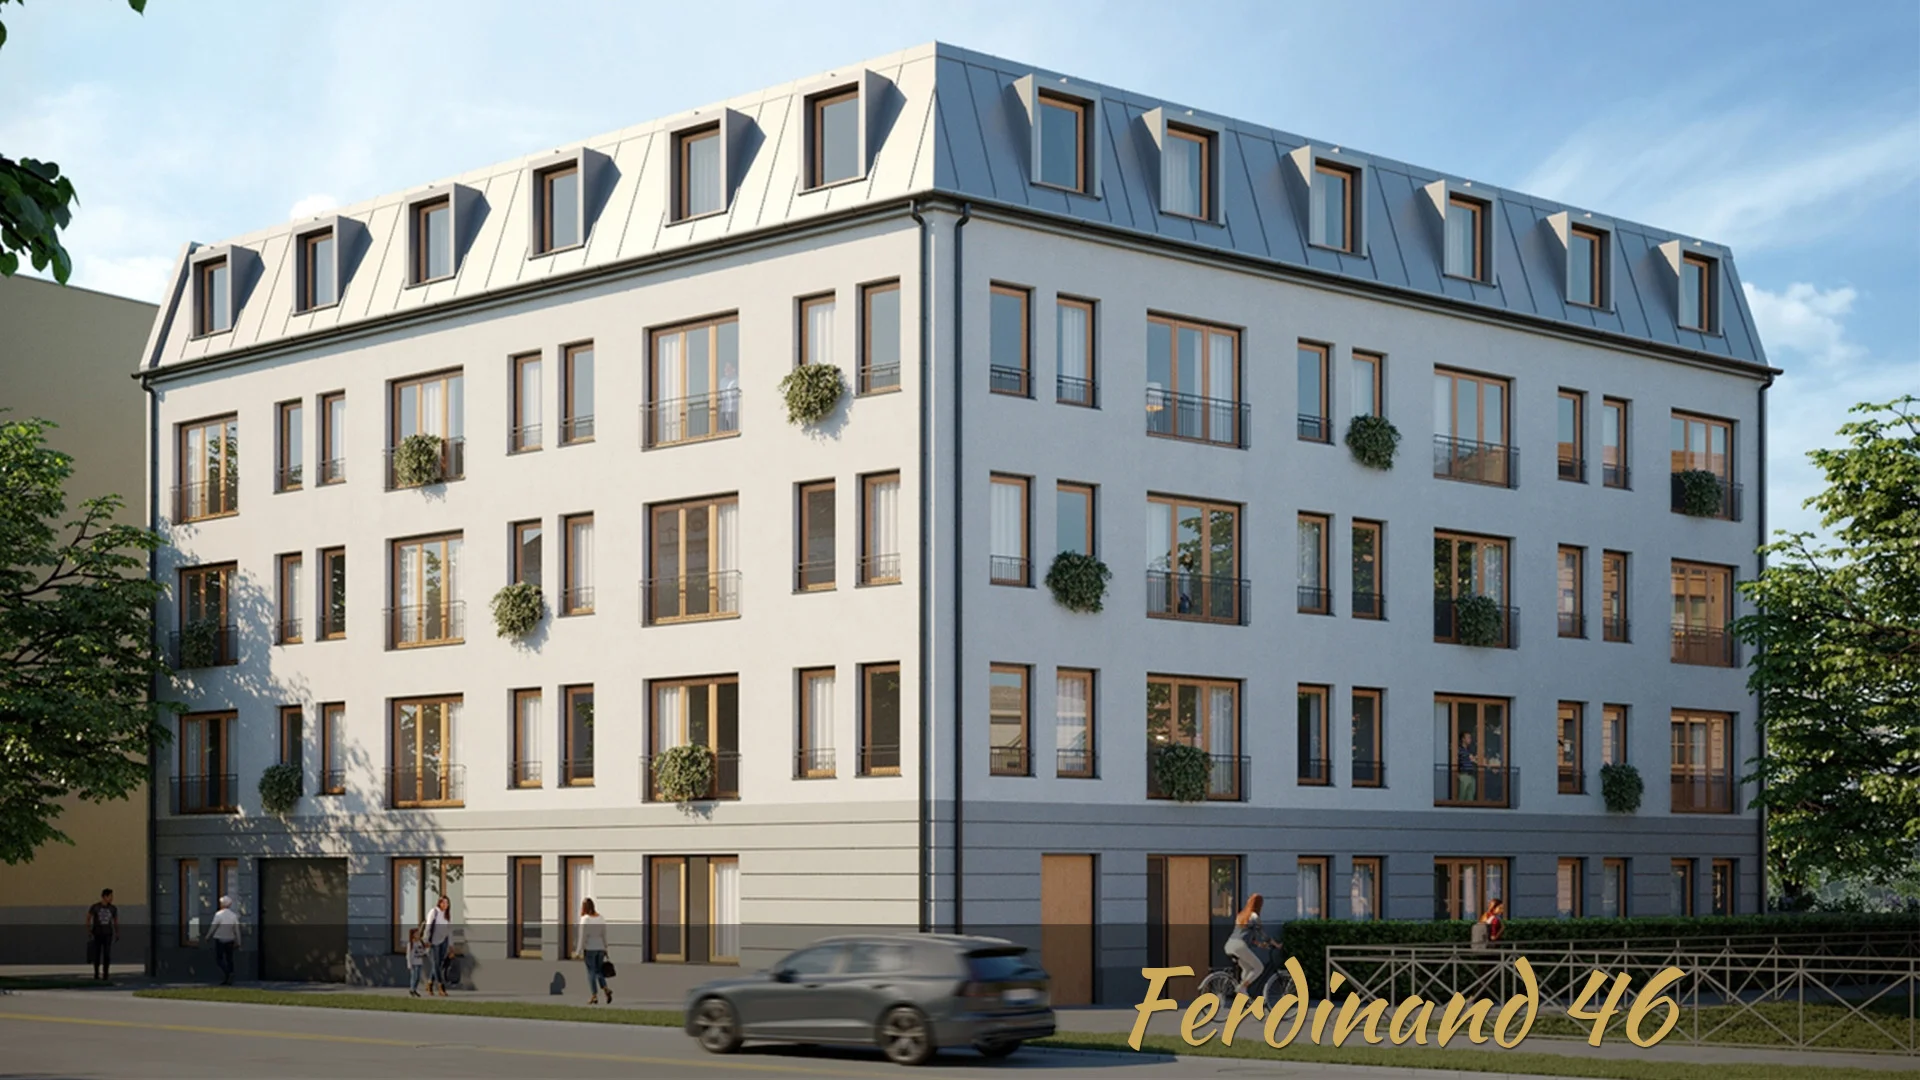 Ferdinand 46 | Eigentumswohnungen in Potsdam